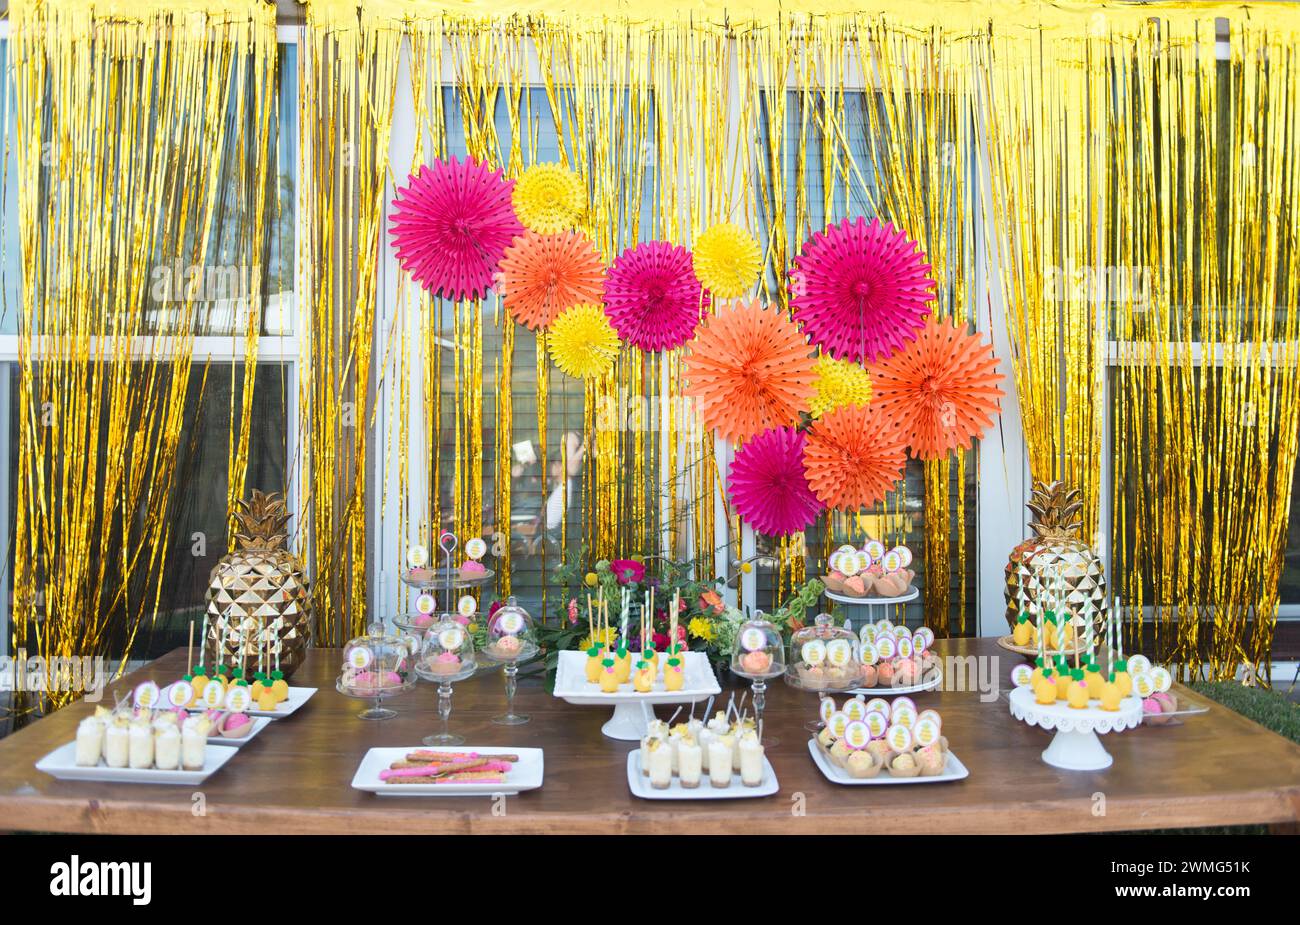 Tavolo da dessert con decorazioni di ananas su un tavolo di legno Foto Stock